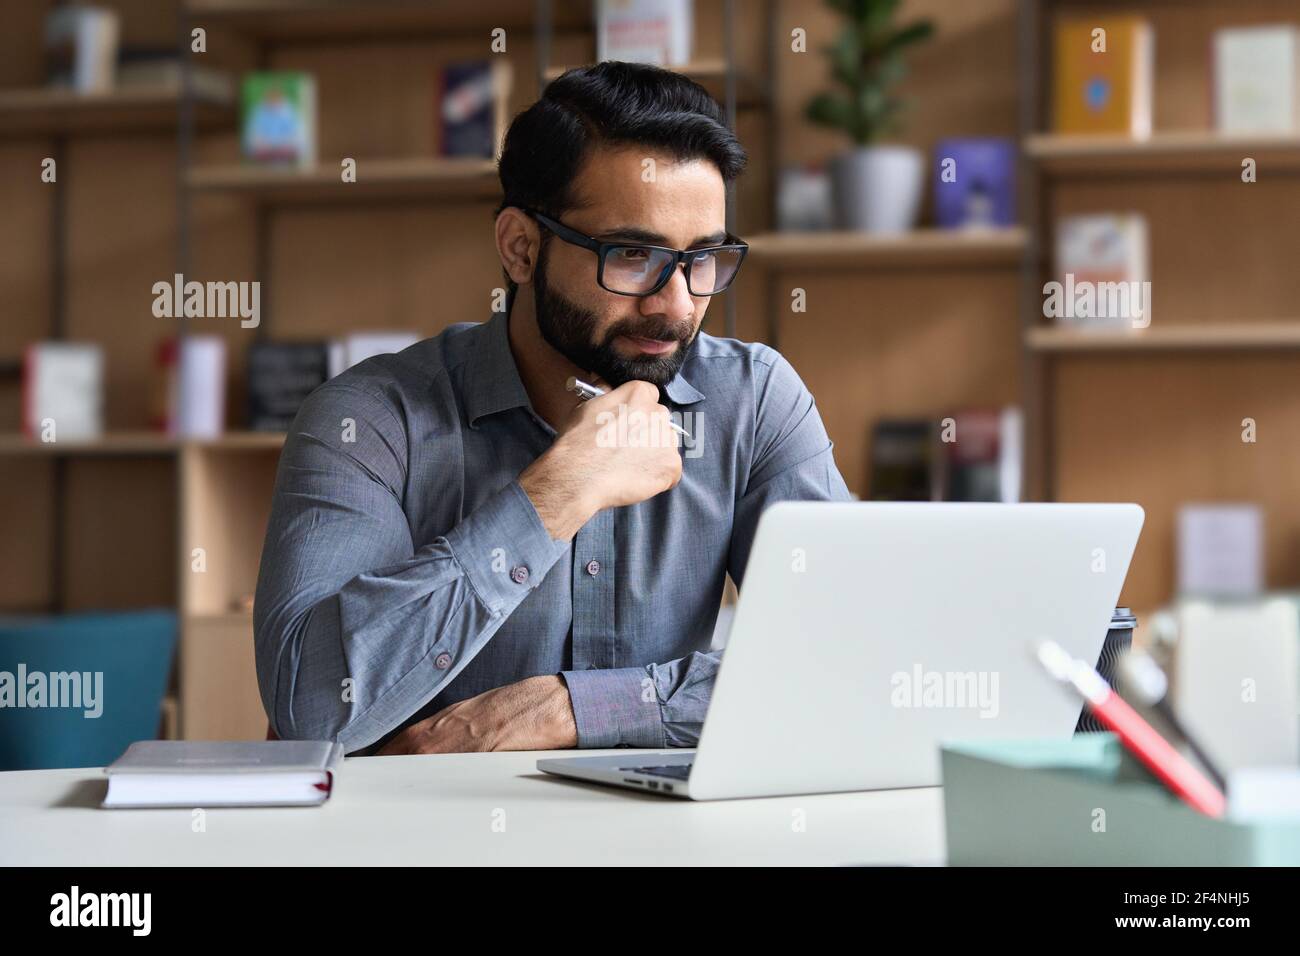 Homme d'affaires indien sérieux travaillant ou étudiant sur un ordinateur portable. Banque D'Images